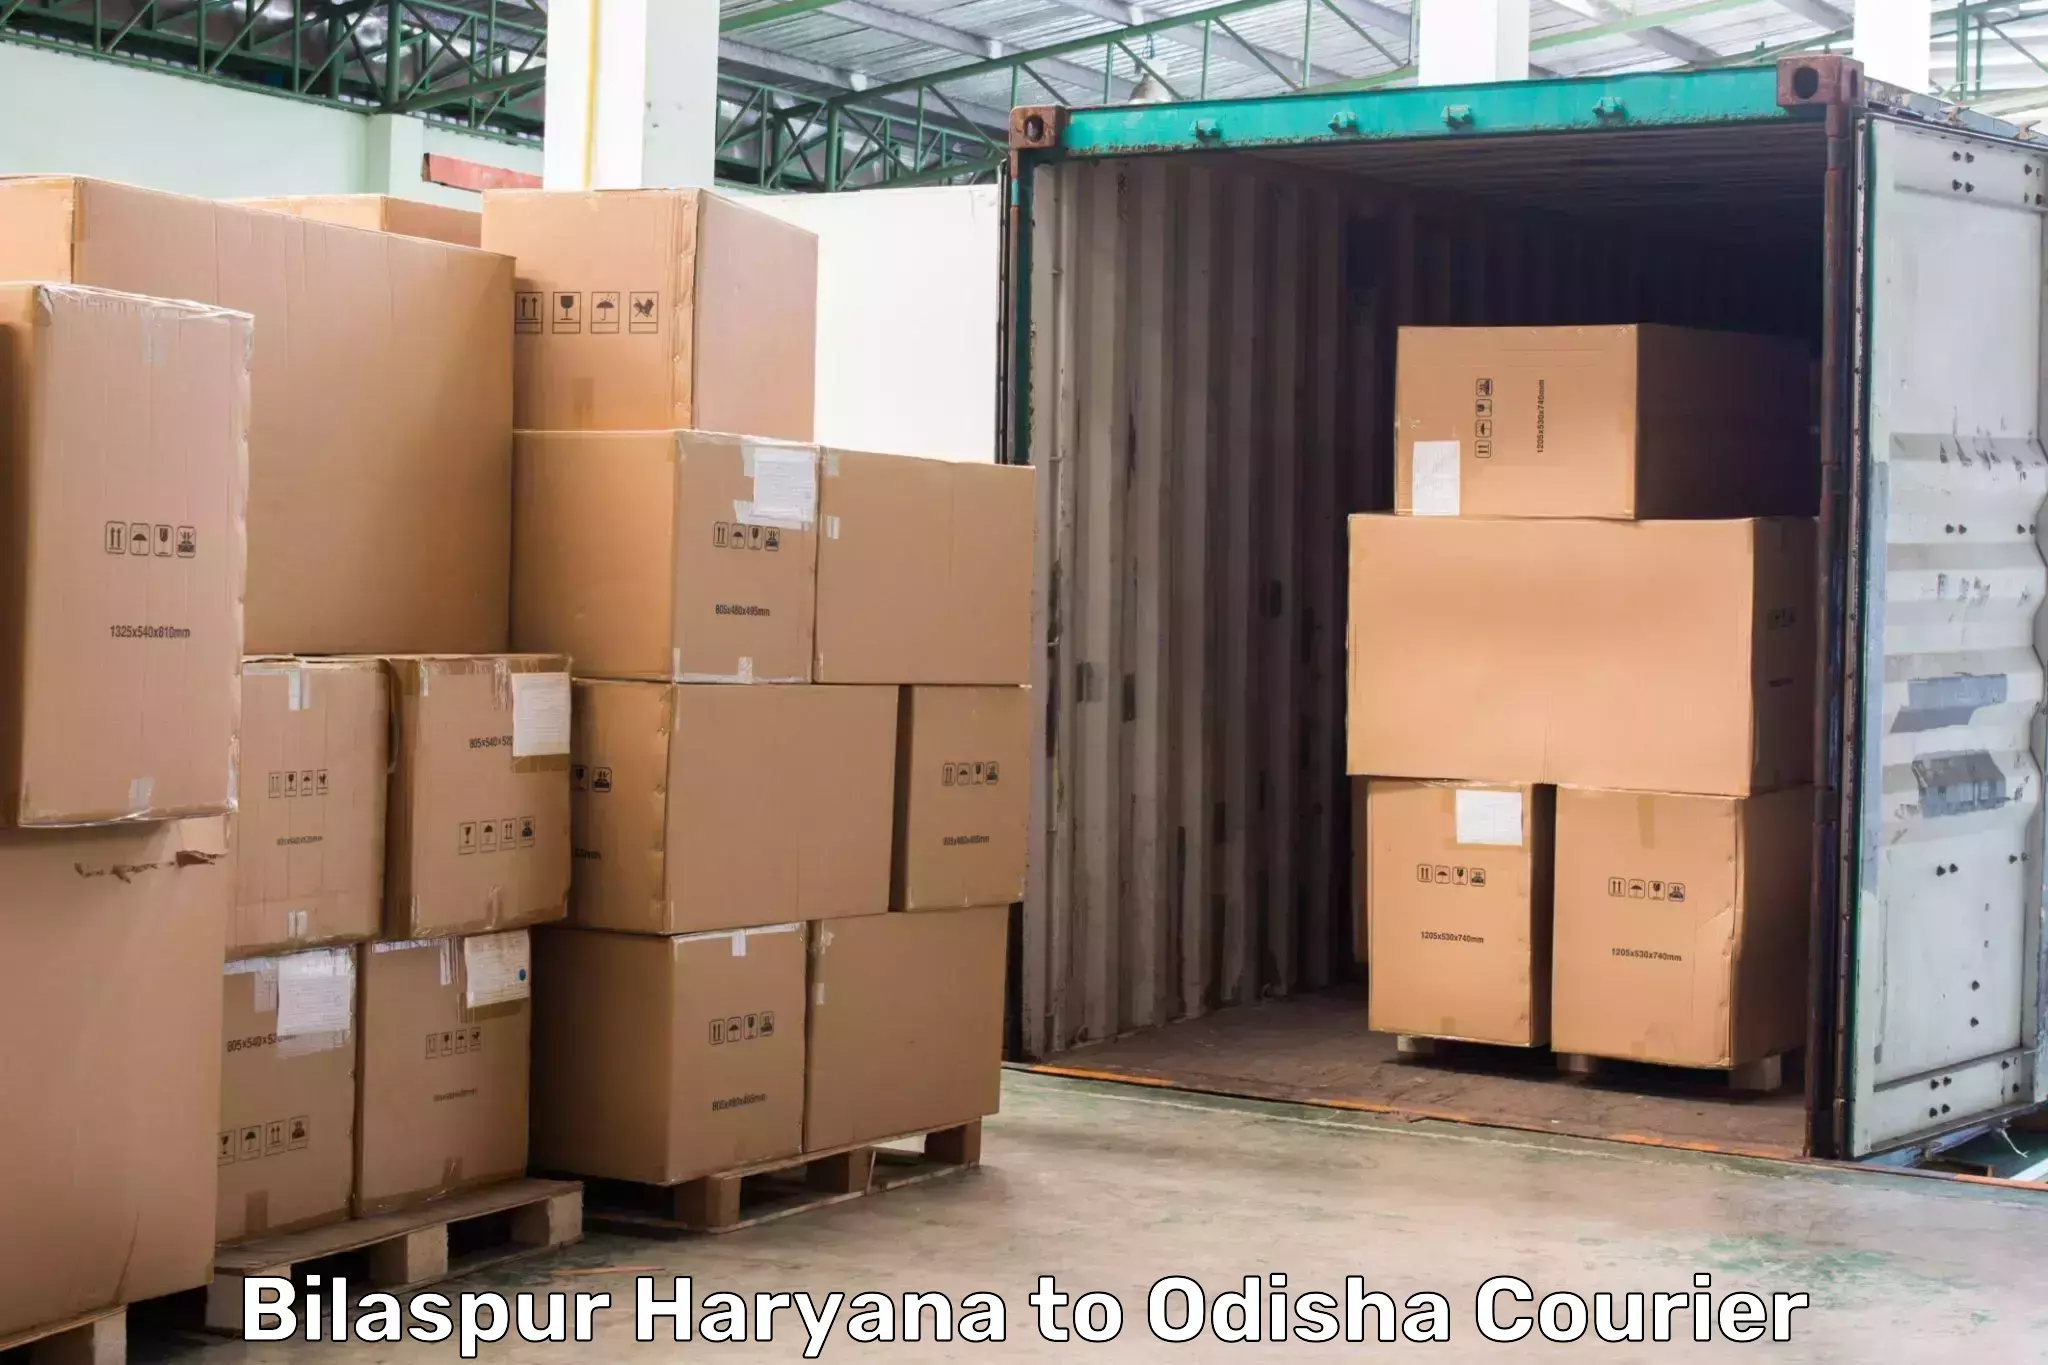 Express courier capabilities Bilaspur Haryana to Jagannathprasad